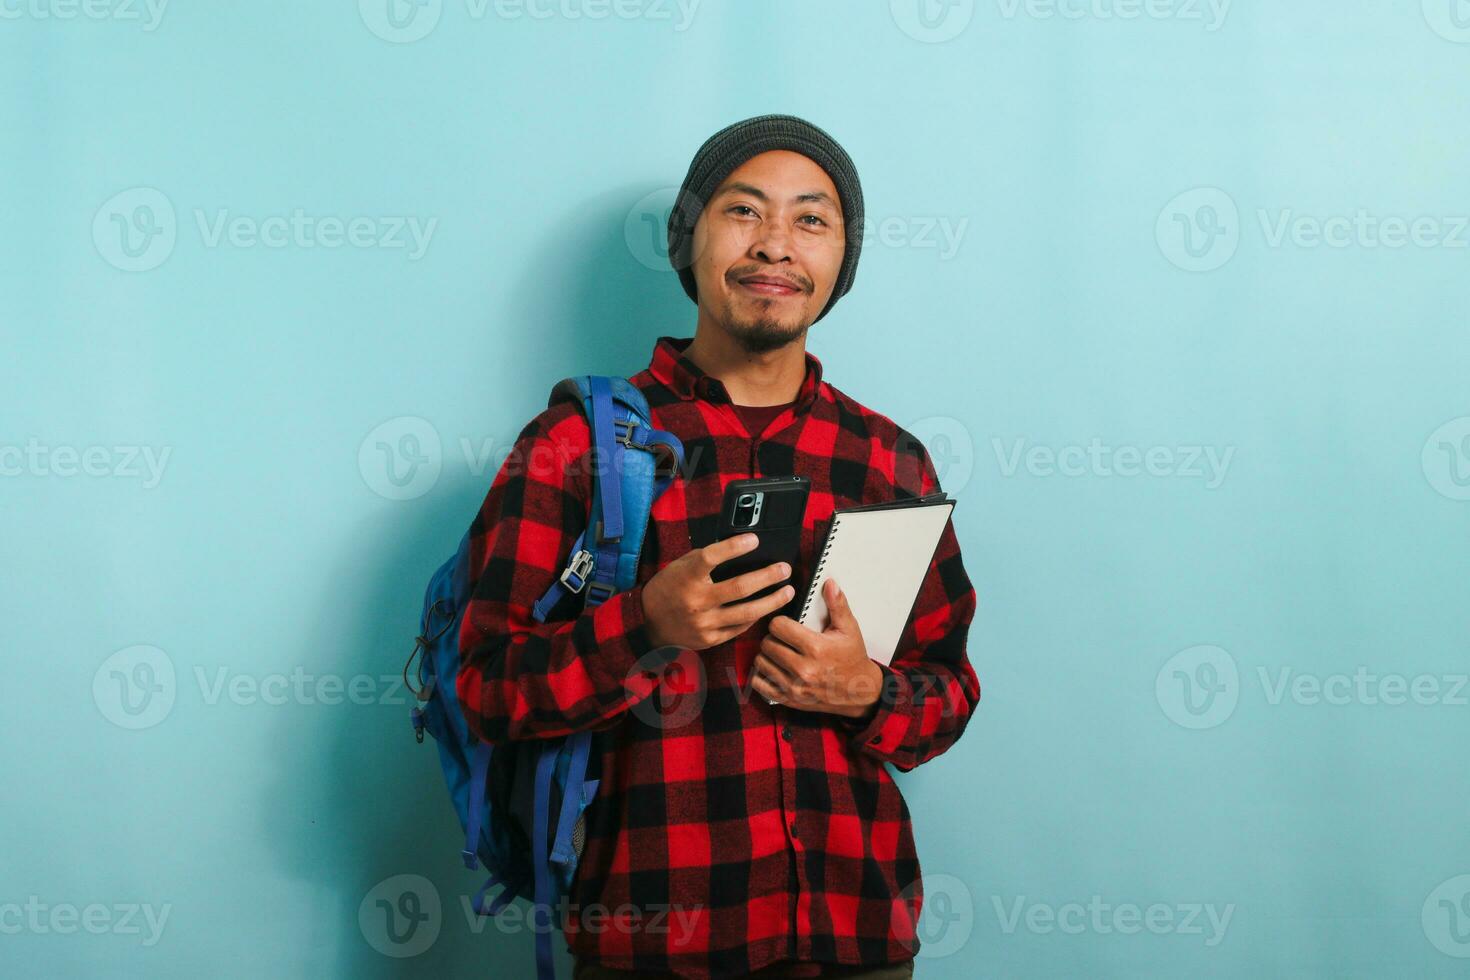 upphetsad ung asiatisk manlig studerande, bär ryggsäck, mössa hatt, och röd pläd flanell skjorta, leende och utseende på kamera, innehar en bok och användningar hans telefon, medan stående mot en blå bakgrund foto